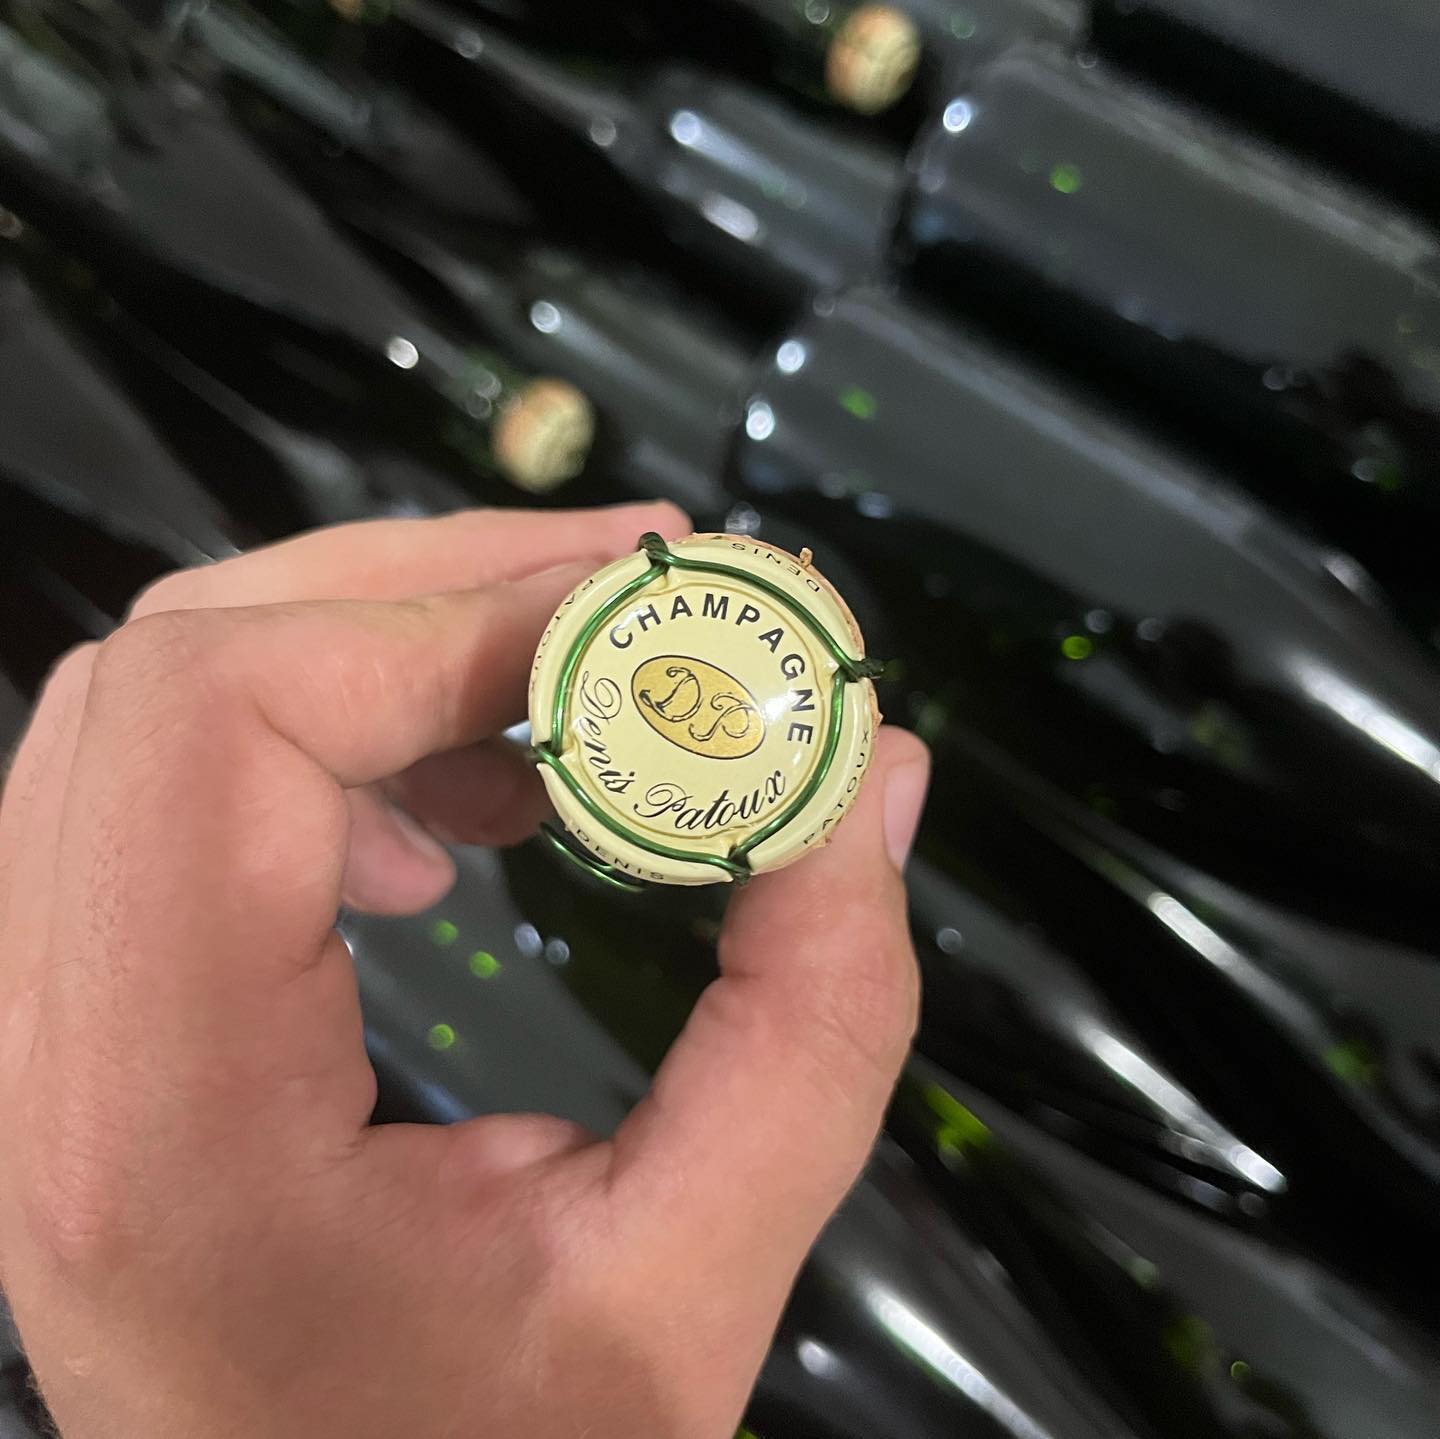 Visiting Denis Patoux champagne - Vandieres - La vallée de la marne - champagne season - visiting champagne